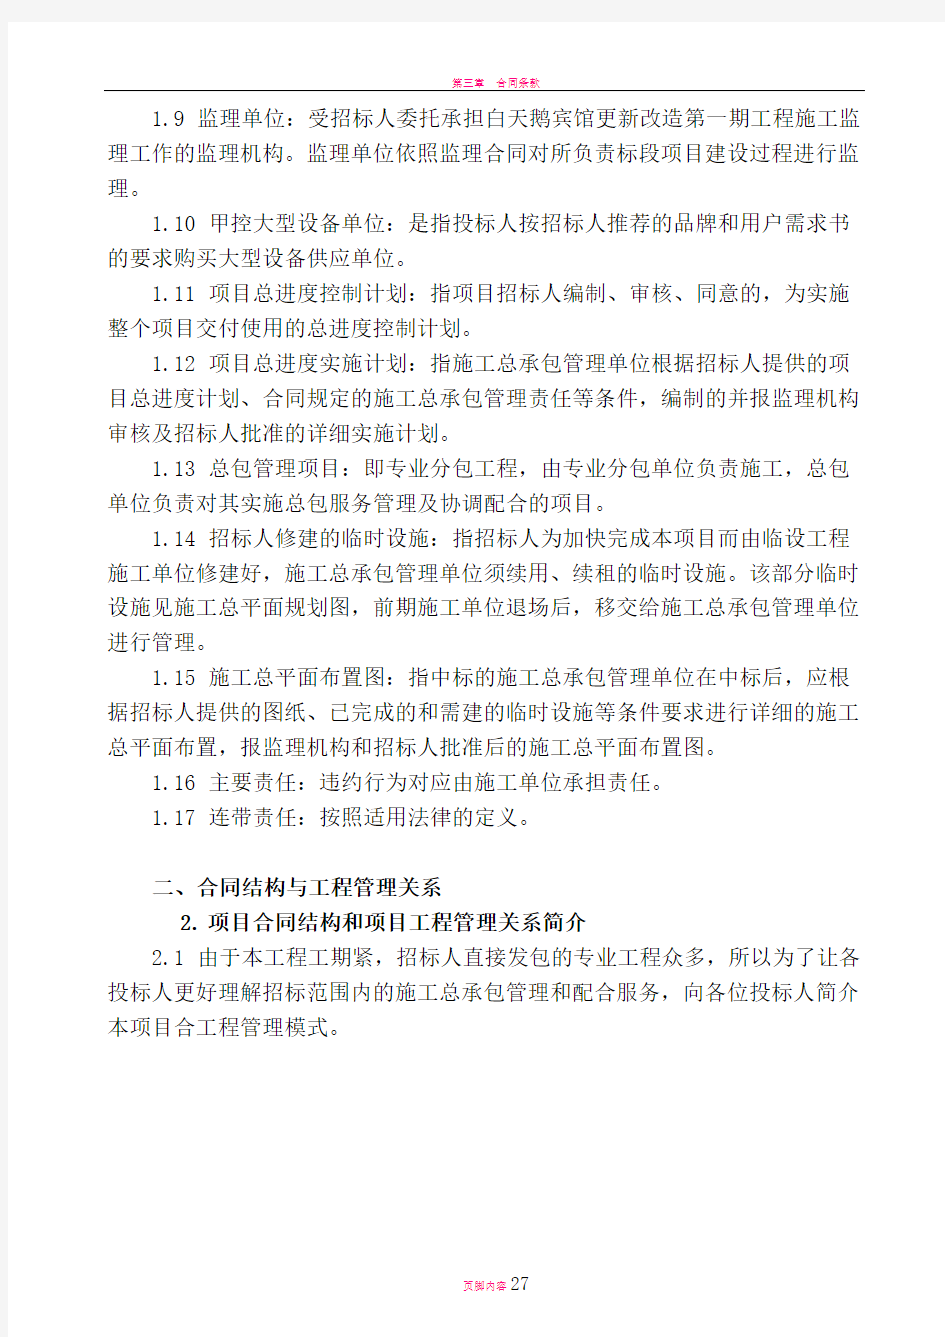 广州白天鹅宾馆更新改造施工总承包管理及配合服务管理办法